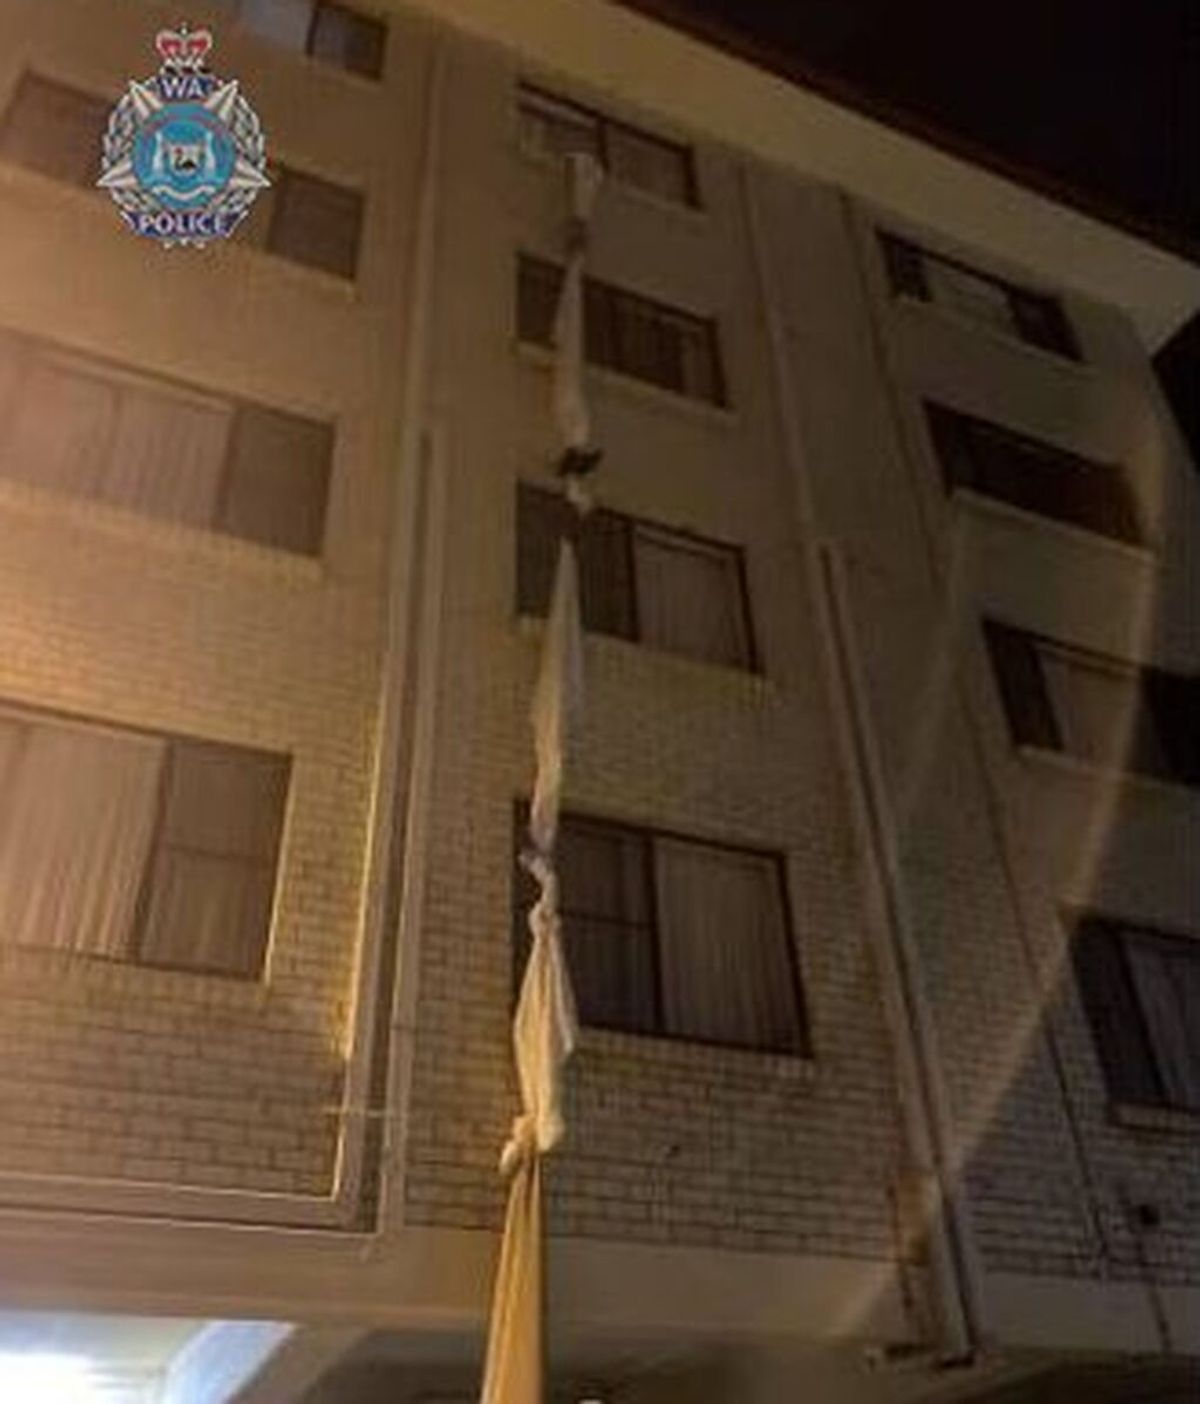 Ata sábanas para escaparse del cuarto piso del hotel en el que estaba confinado por la policía en Australia